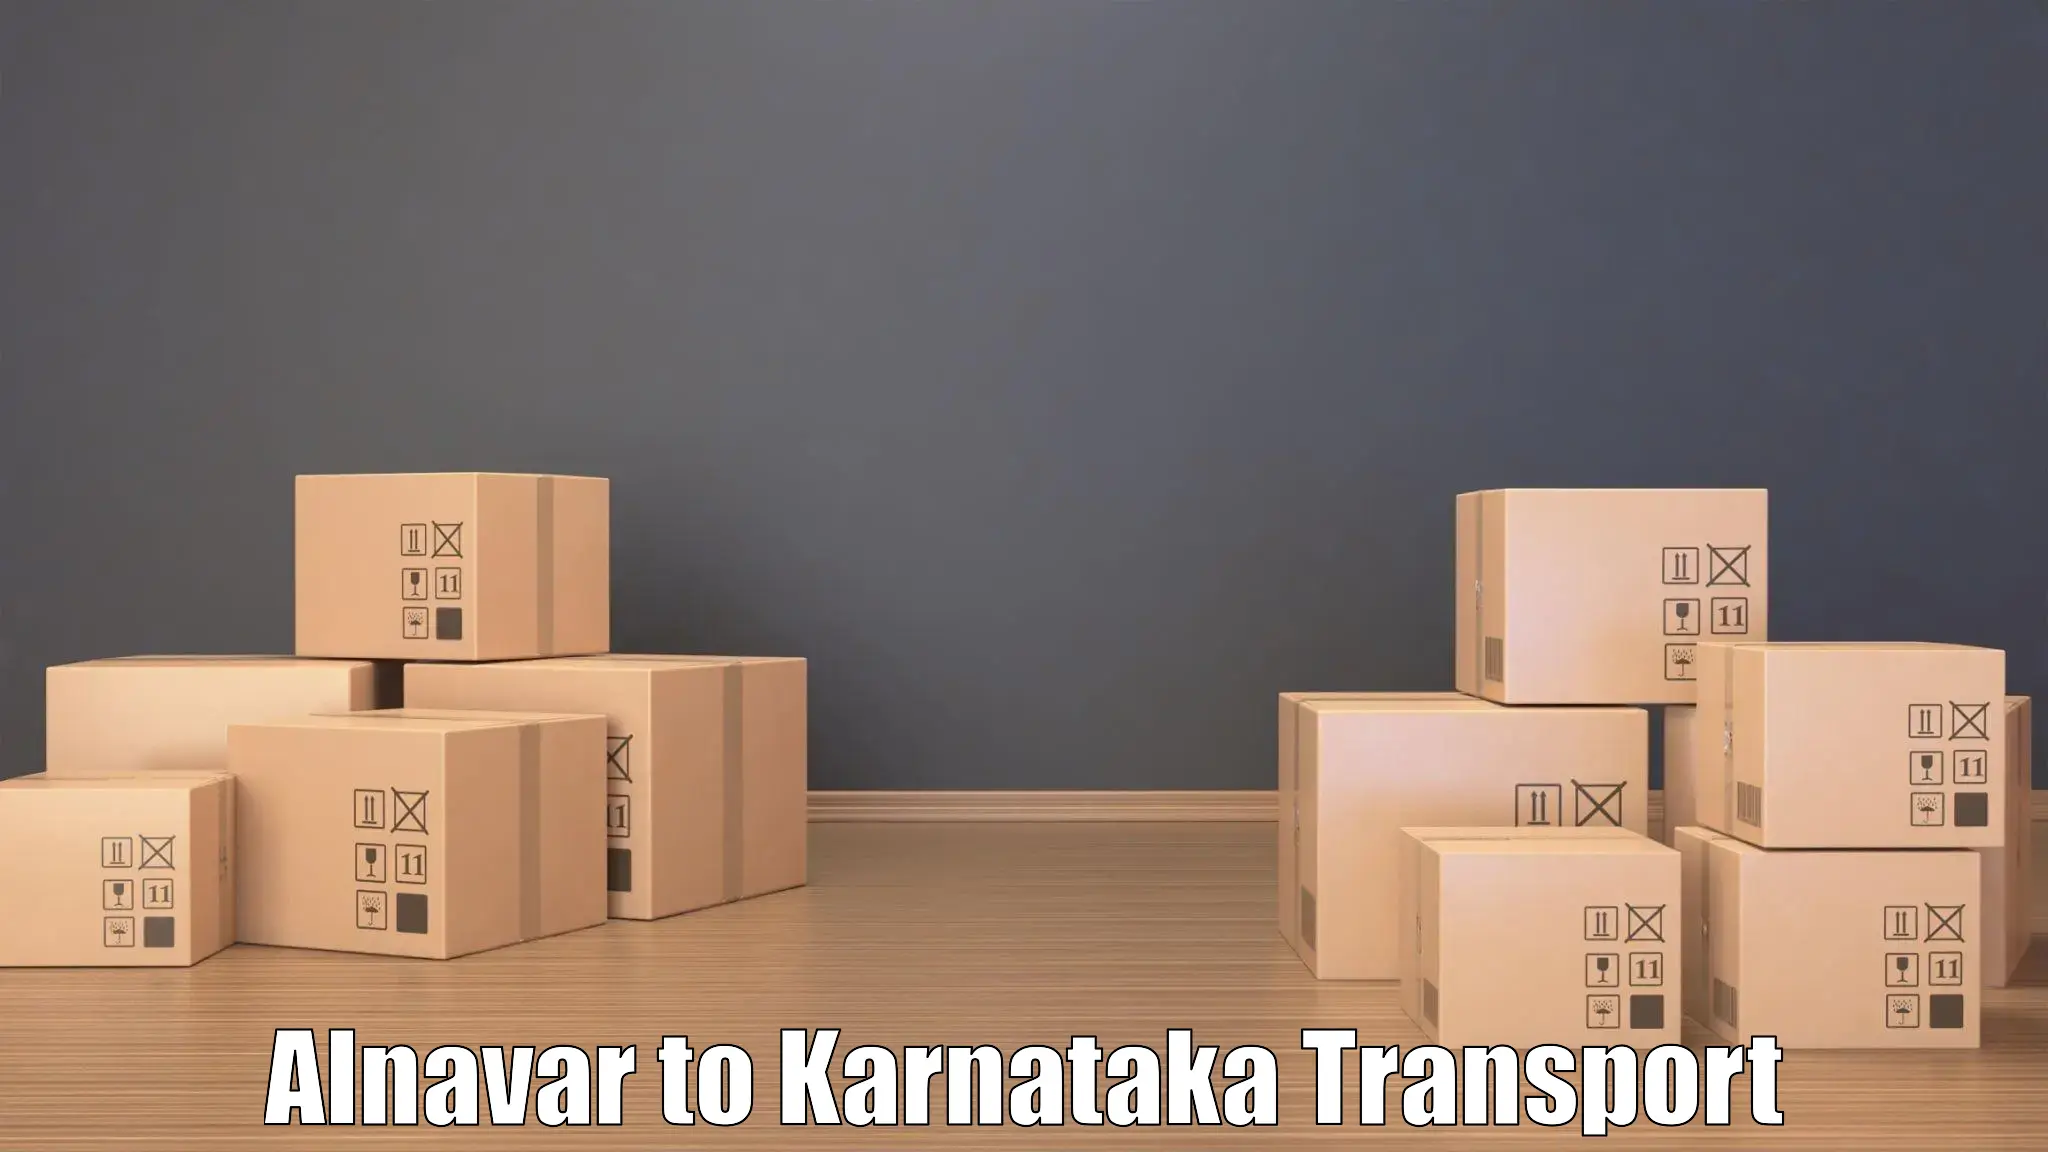 Daily transport service Alnavar to Karnataka